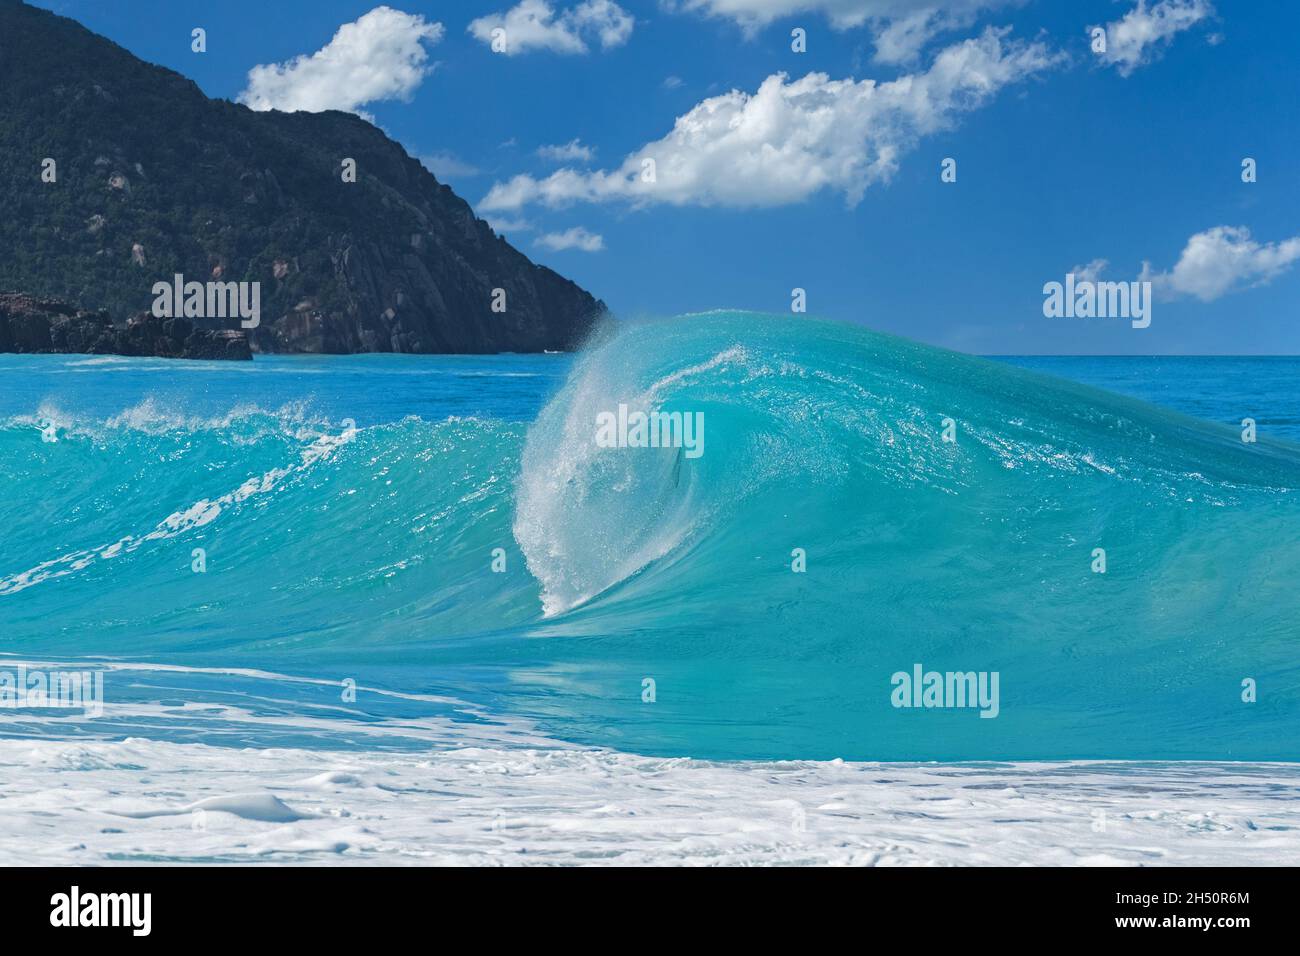 Grande vague se brisant sur la plage à la baie de Josiah, paradis du surf sur l'île de Tortola, îles Vierges britanniques, Petites Antilles, Mer des Caraïbes Banque D'Images